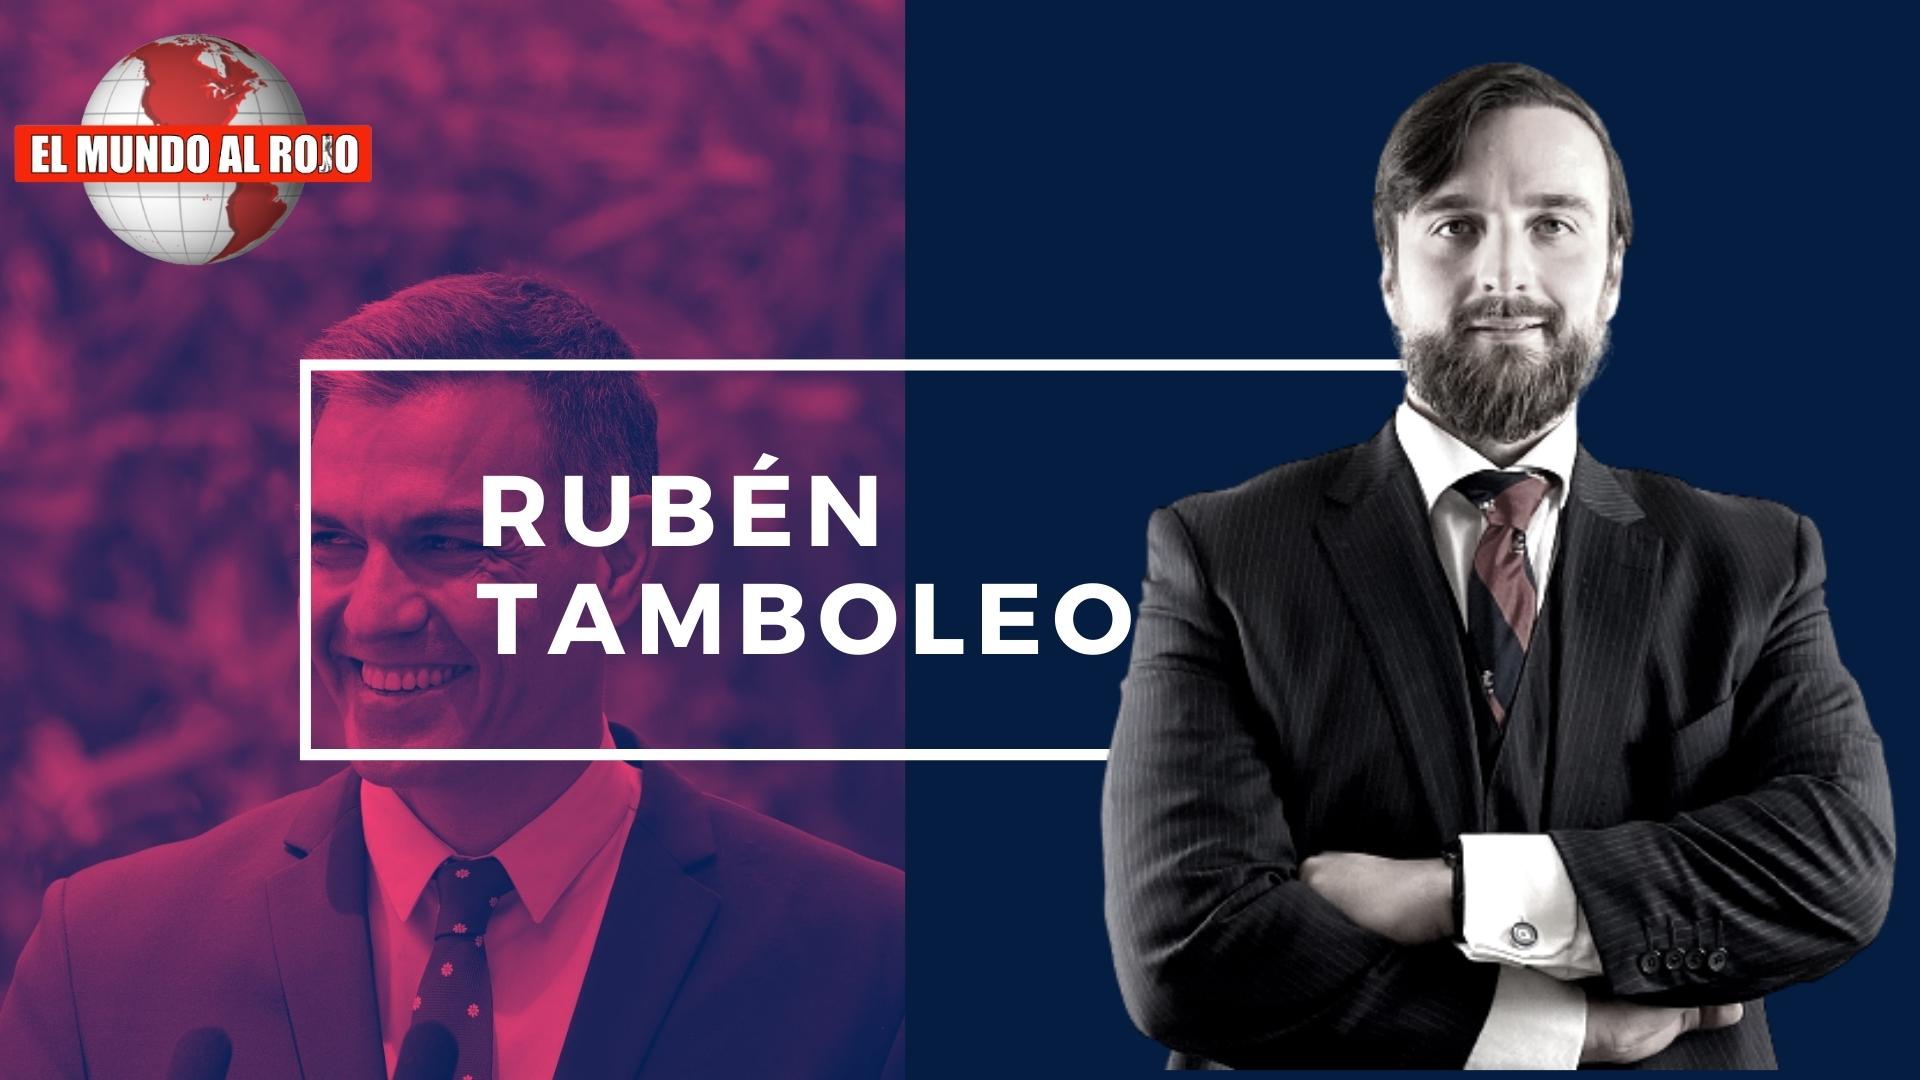 Ruben Tamboleo